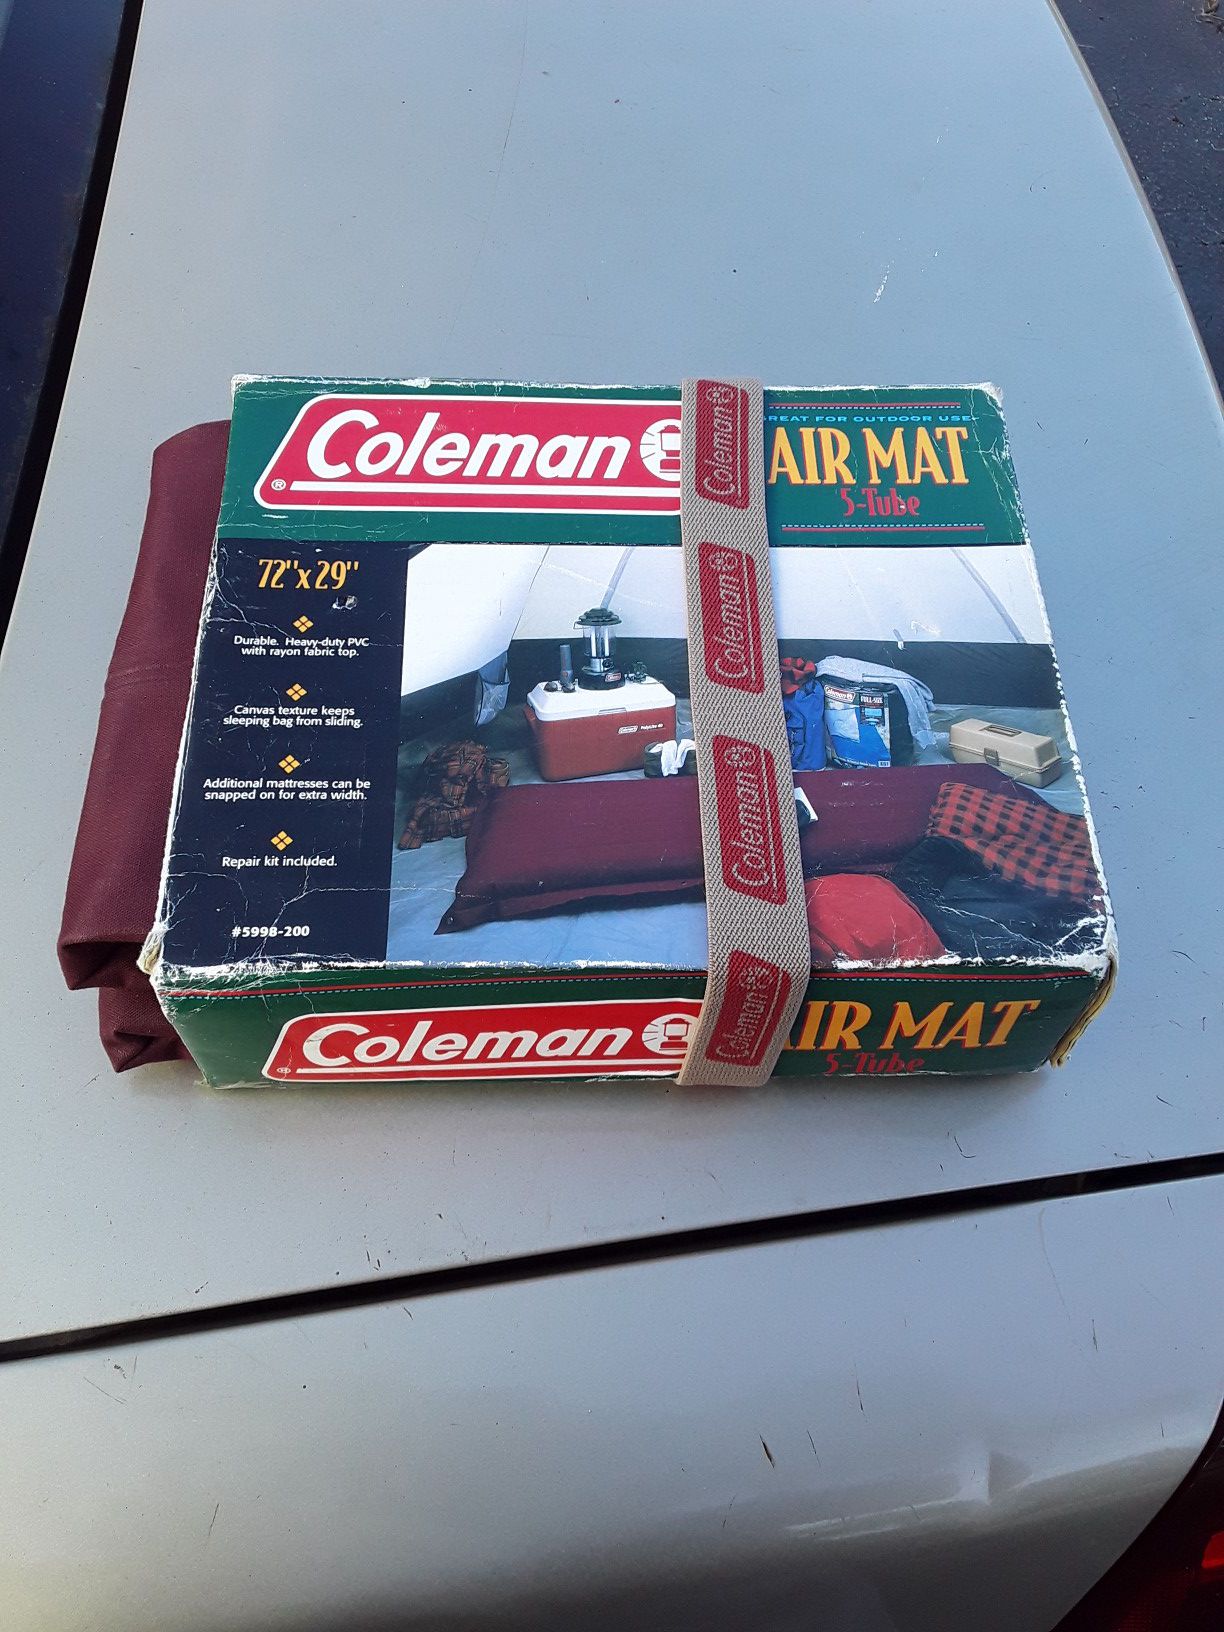 Brand new Coleman's air mattress